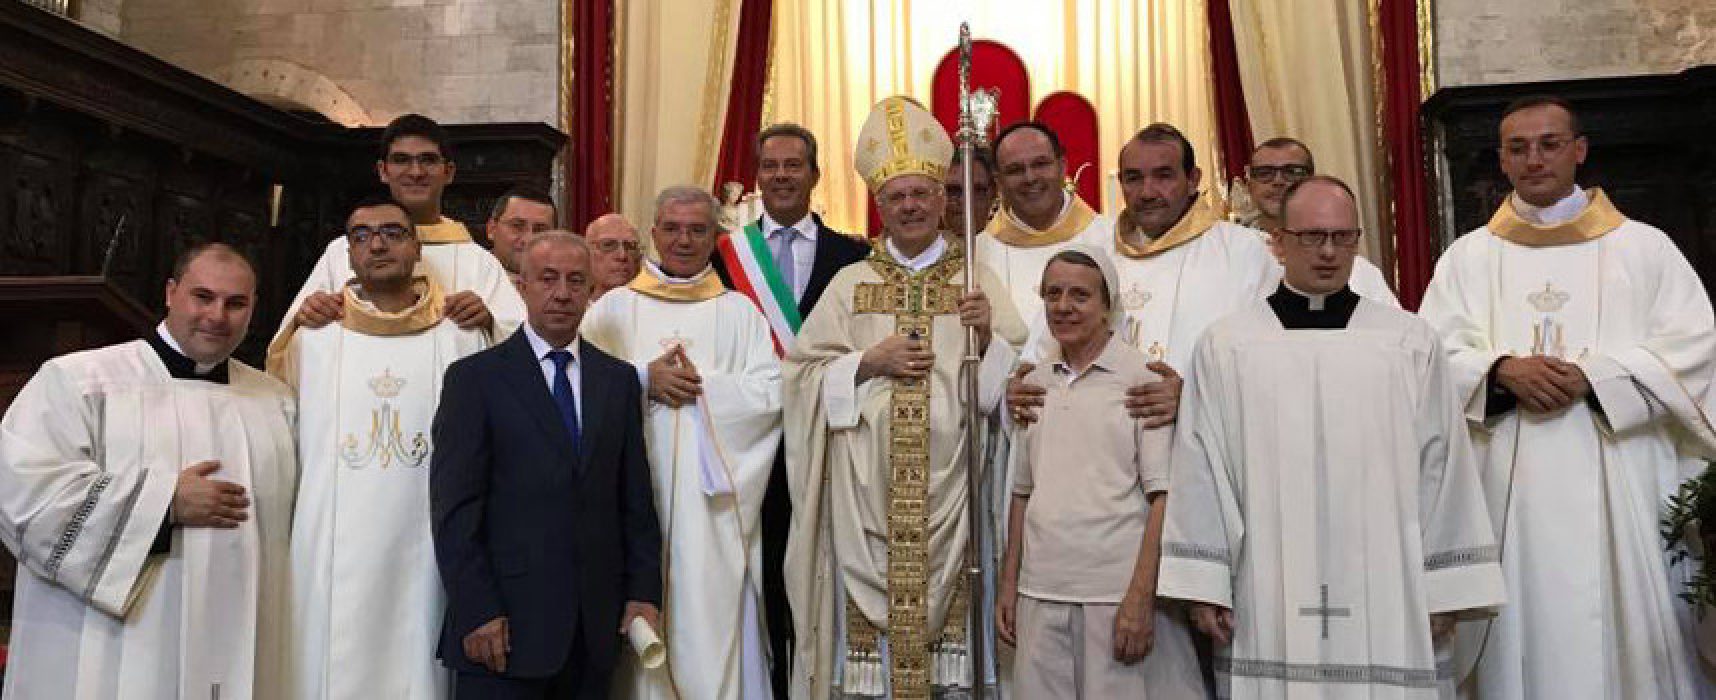 Consegnata la cittadinanza onoraria a Monsignor Pichierri